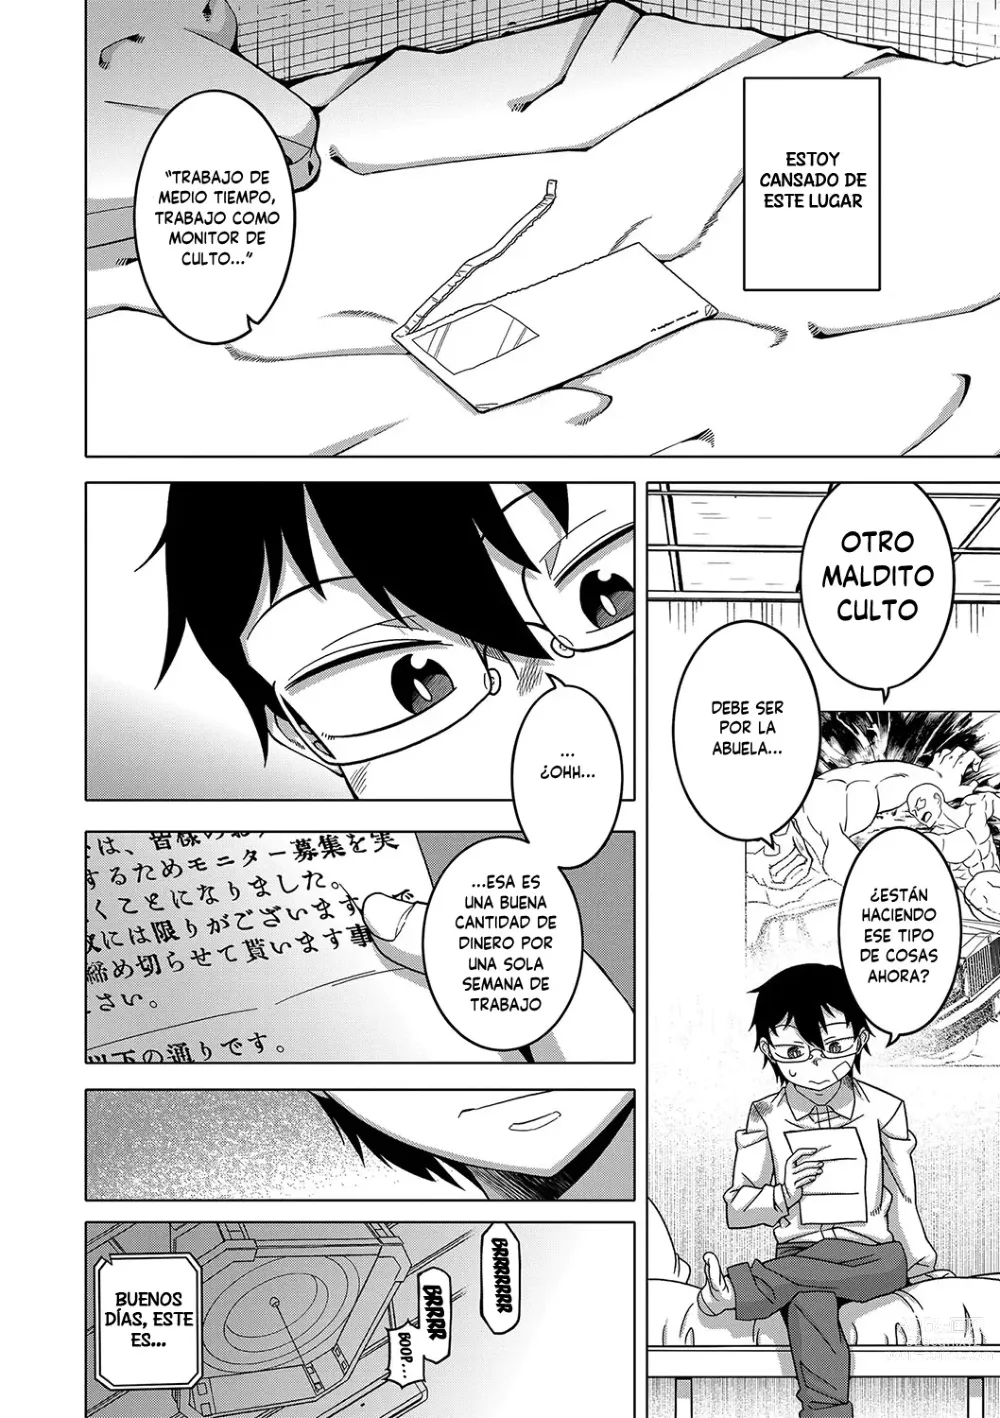 Page 9 of manga Kami-sama no Tsukurikata